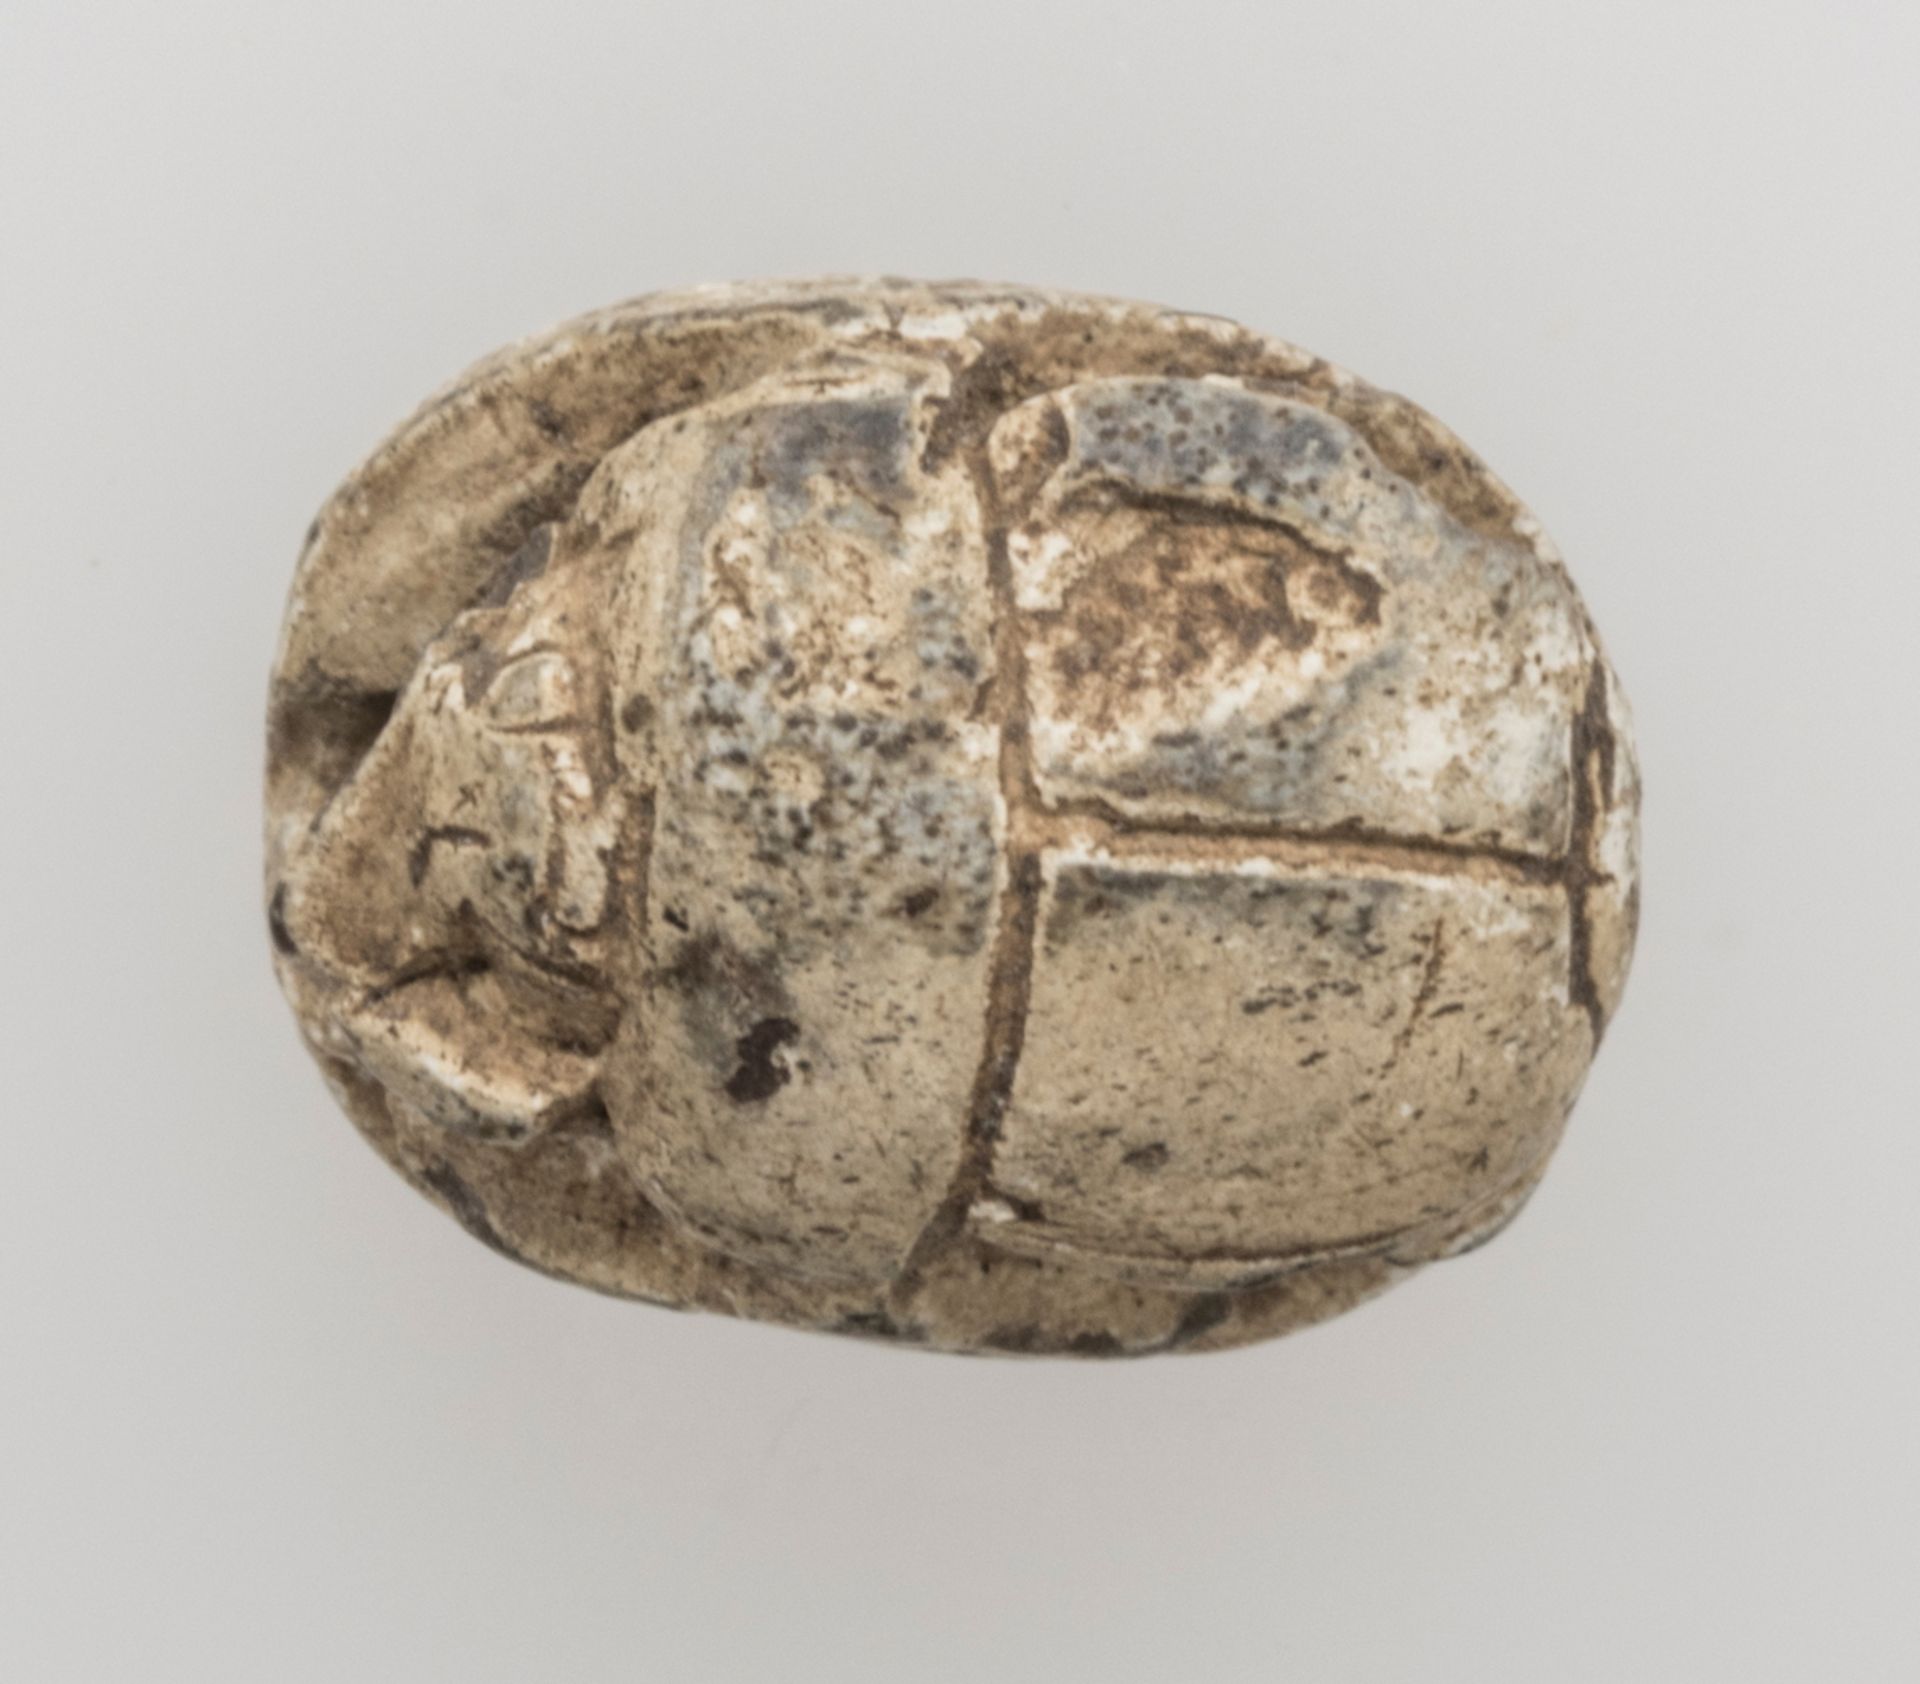 Ägypten Skarabäus, Tehutmes III.. Material: Steatit. Oberseite schematische Darstellung eines